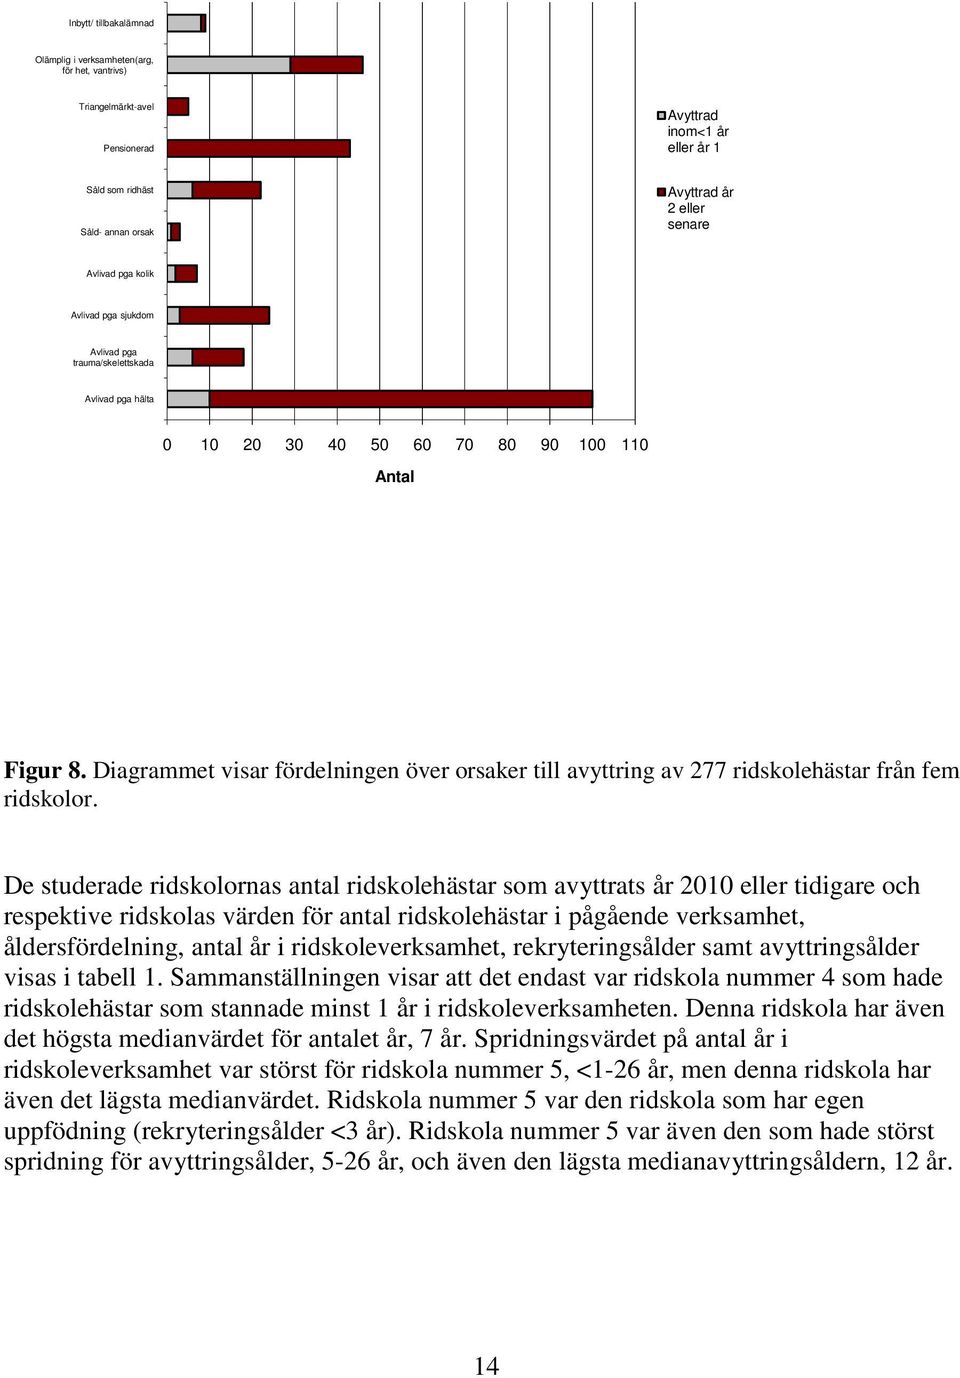 Diagrammet visar fördelningen över orsaker till avyttring av 277 ridskolehästar från fem ridskolor.